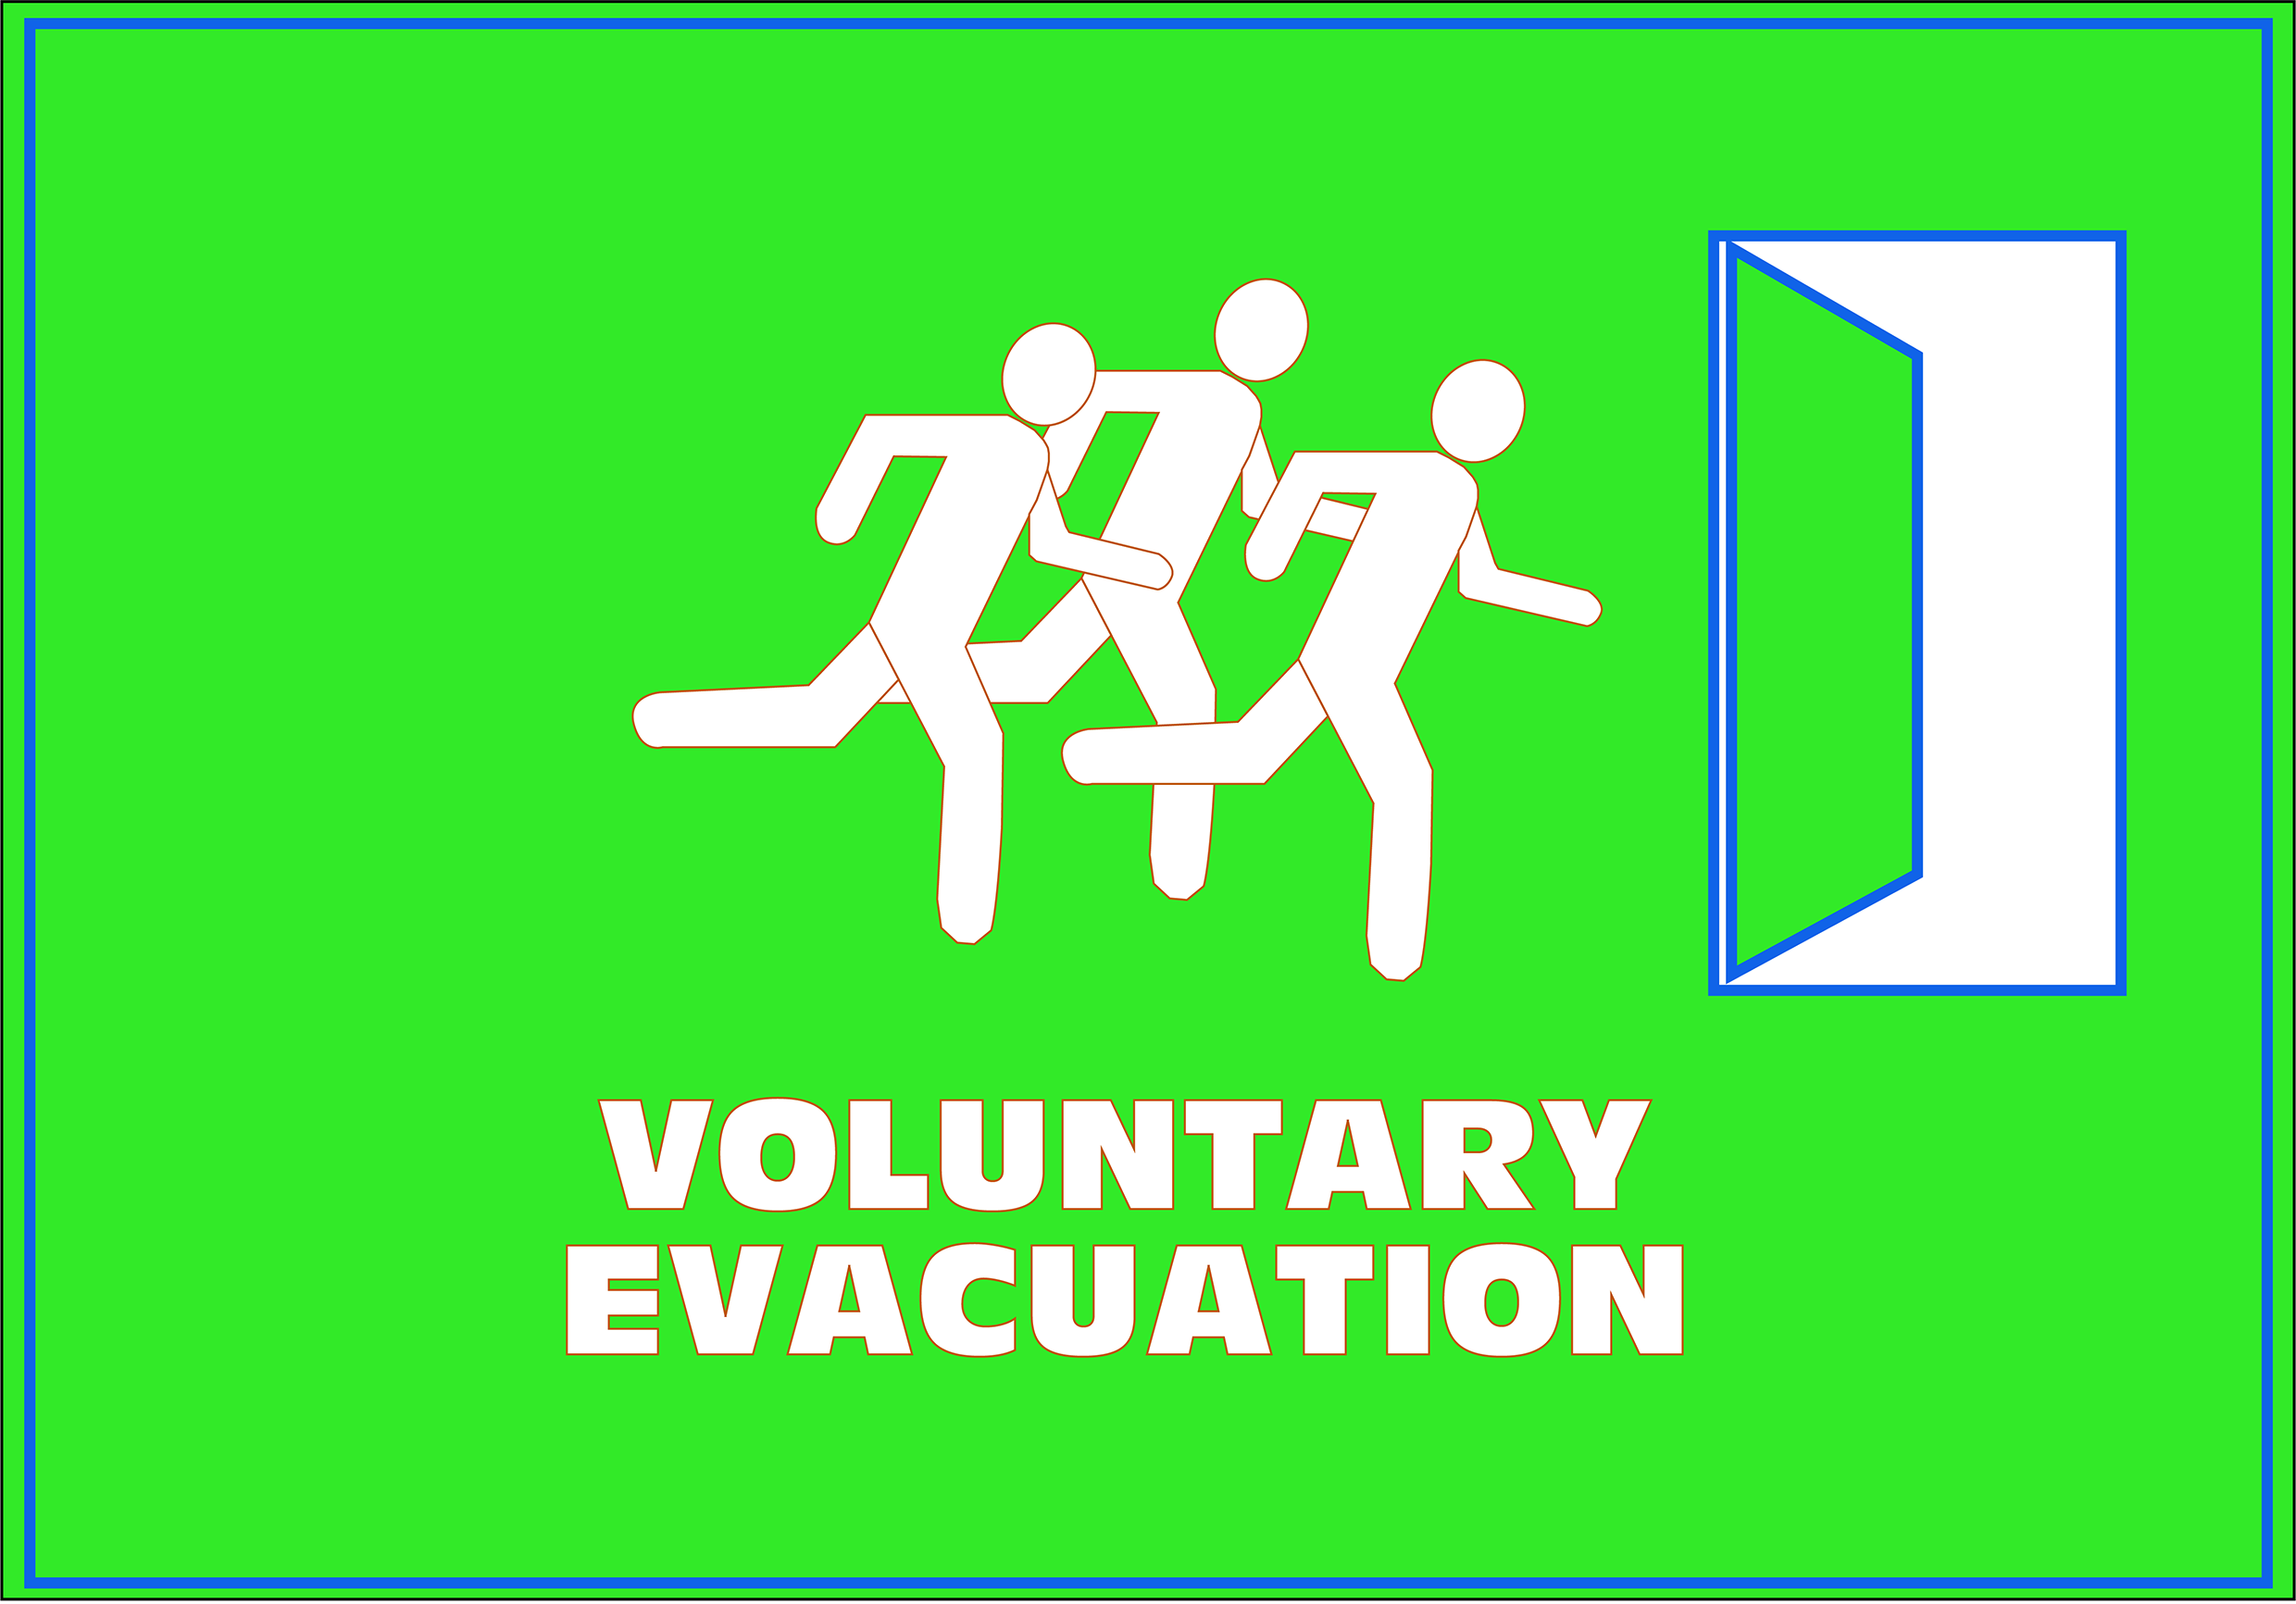 Figure 4.4.1.1 Voluntary Evacuation